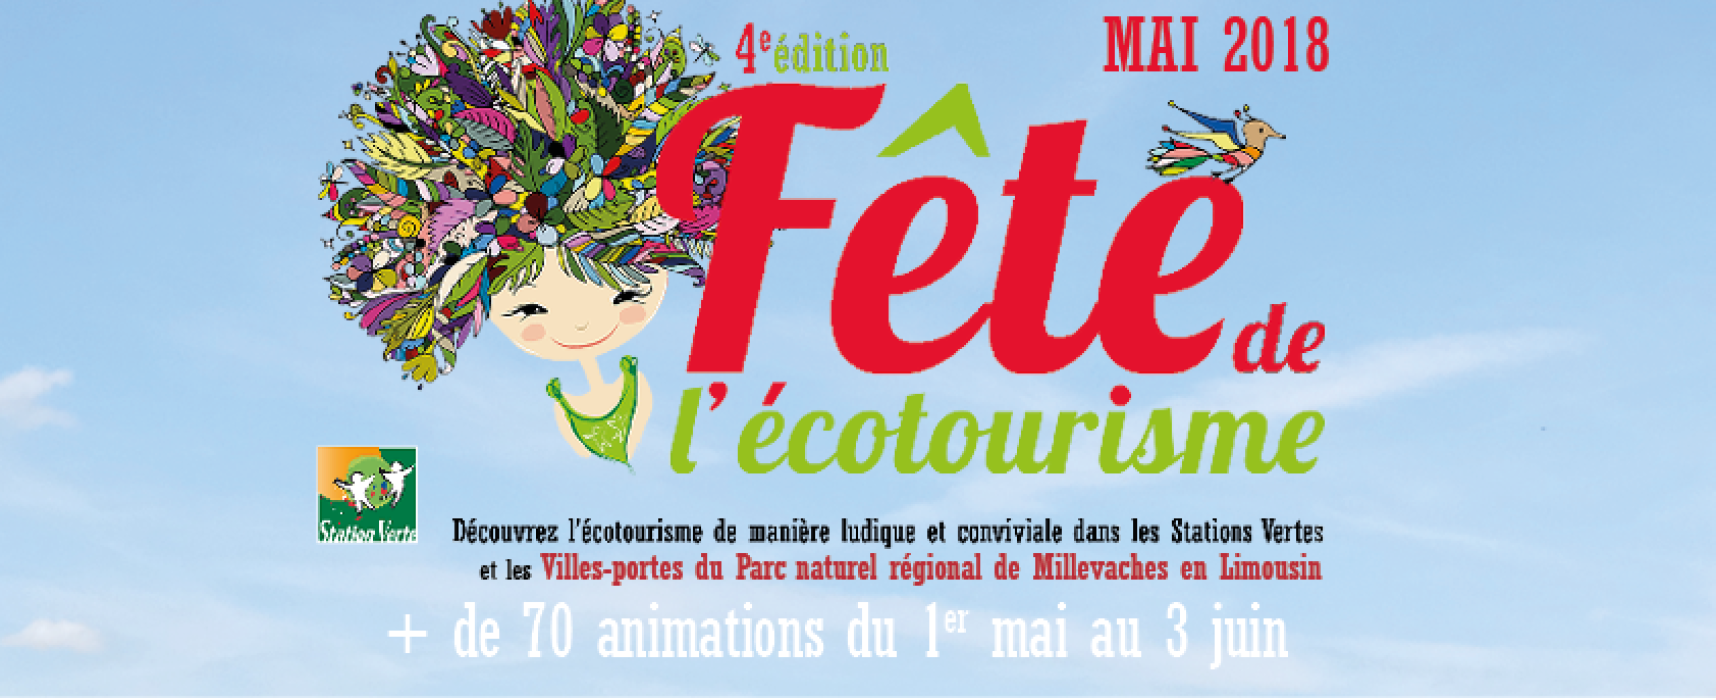 Fête de l’Ecotourisme ! #Felletin #FauxlaMontagne